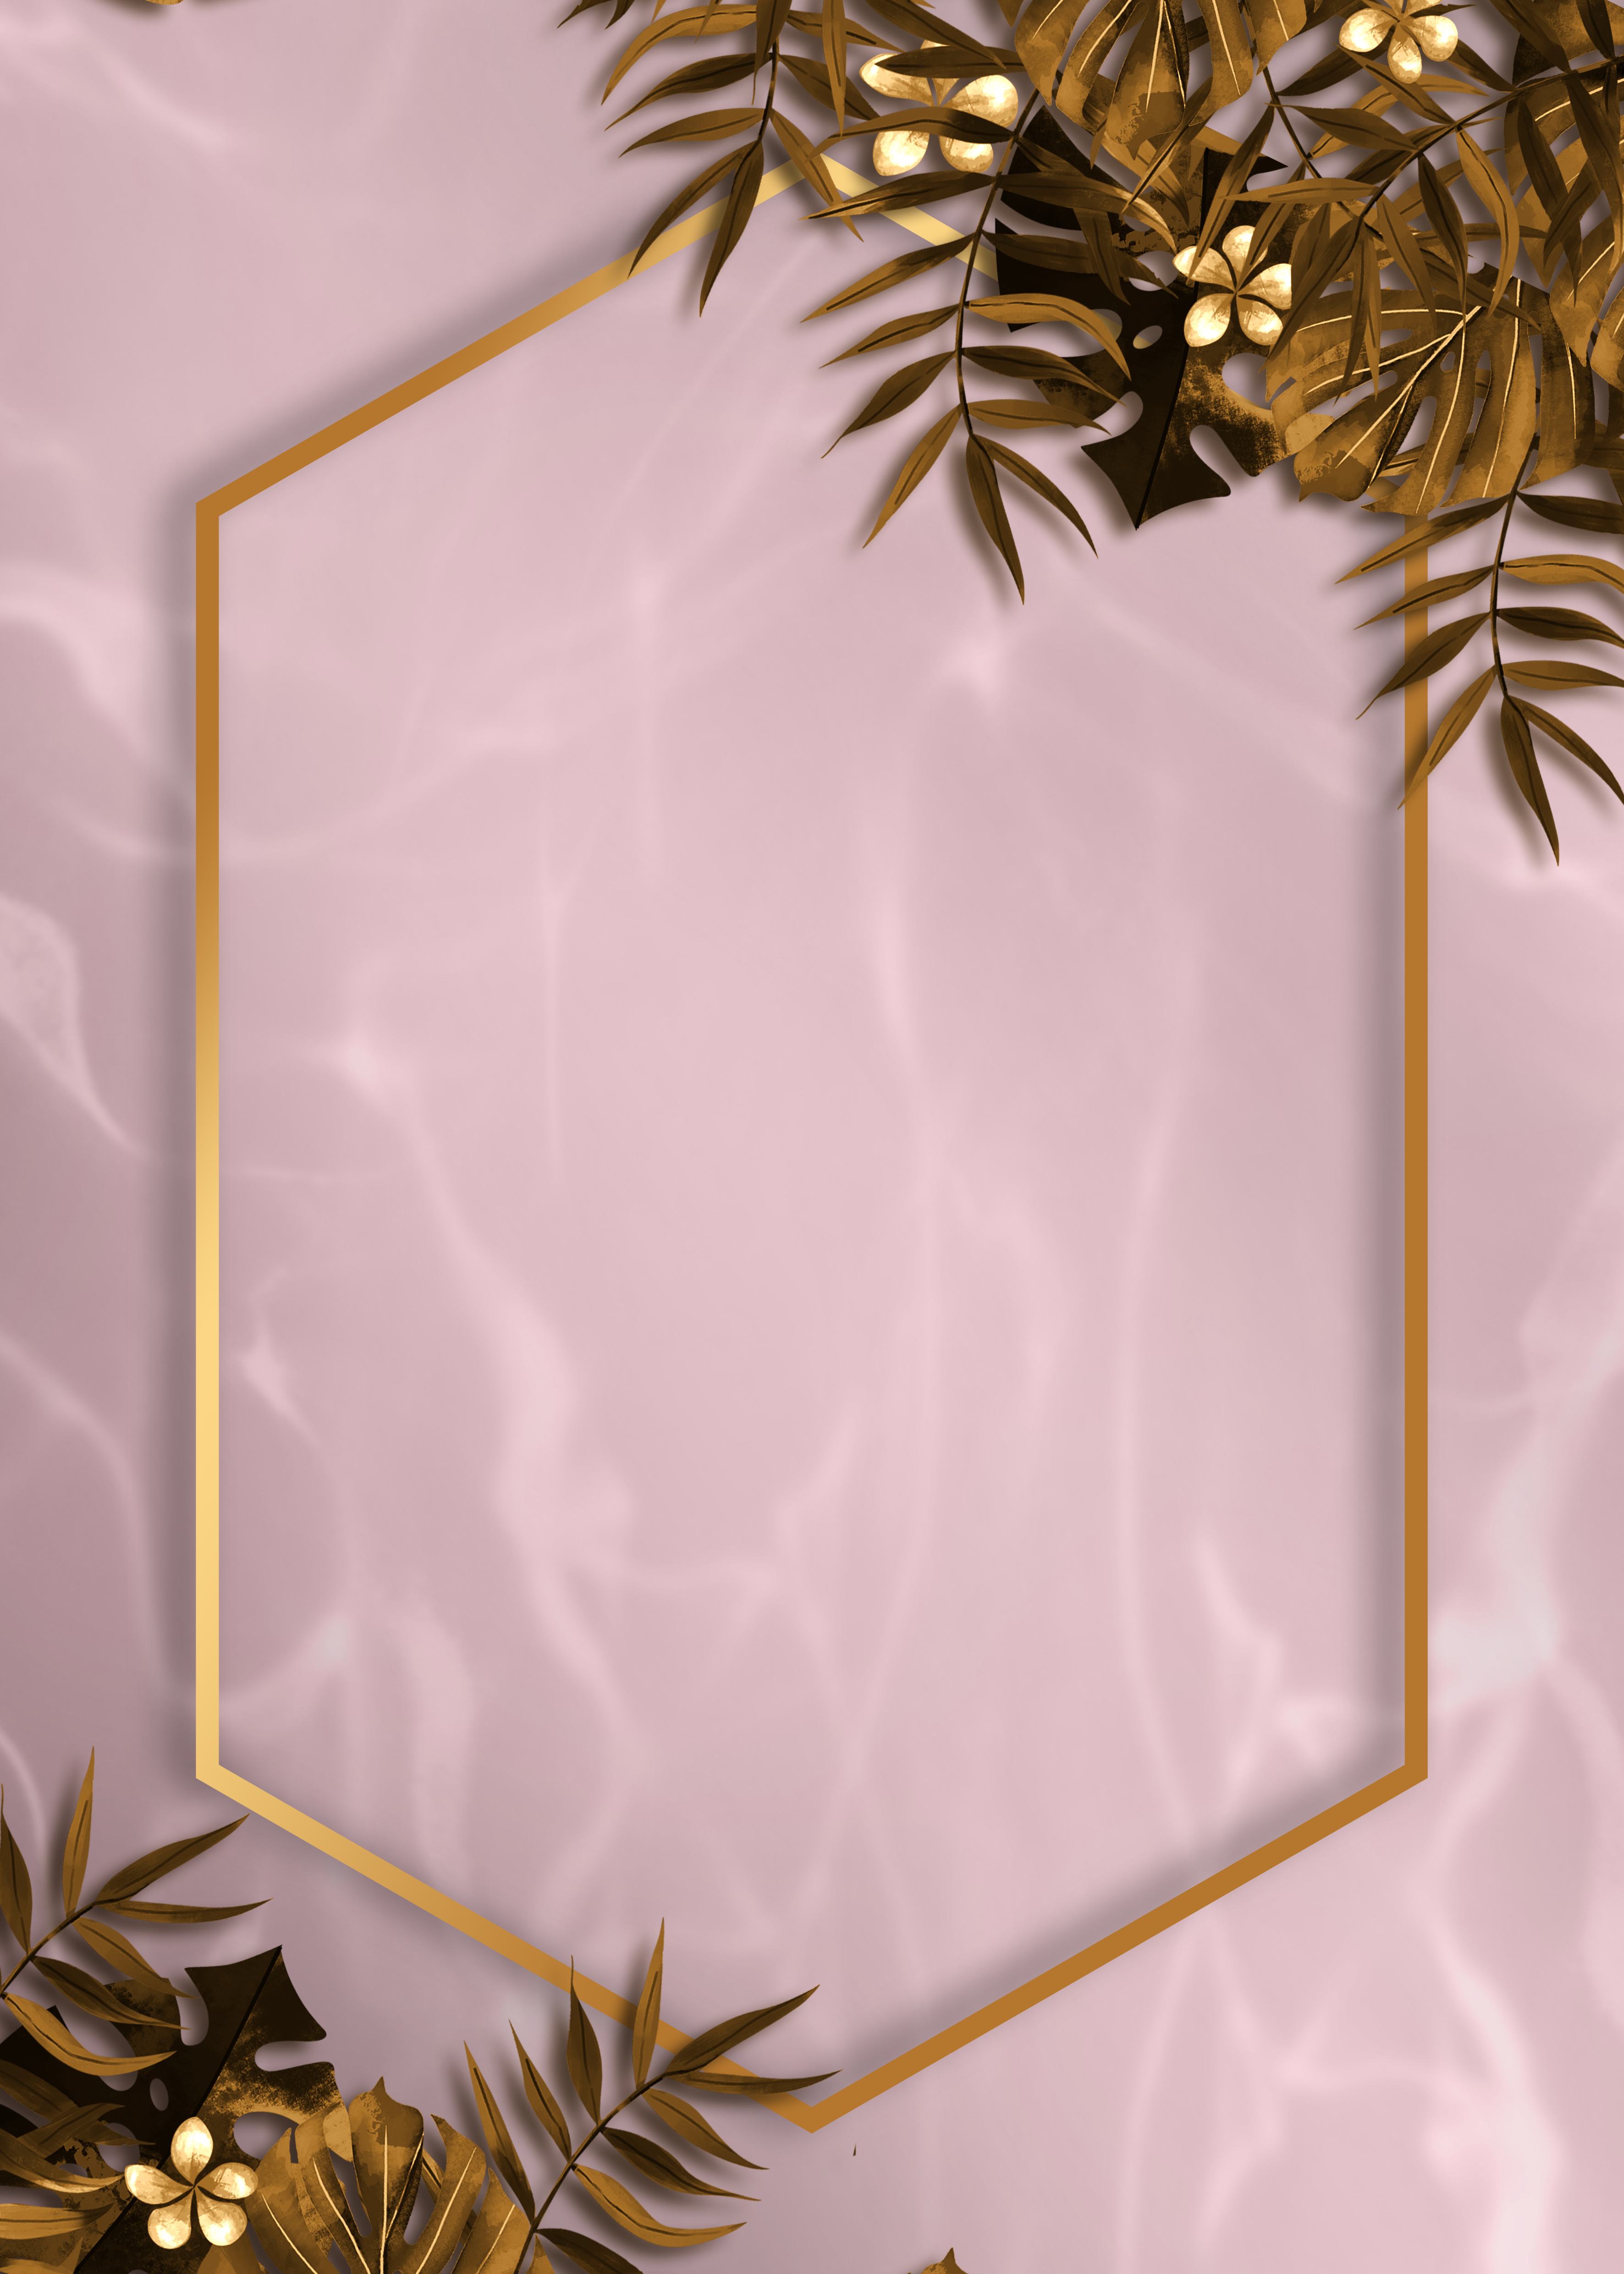 金箔植物波纹金色六边形边框大理石质感背景图片